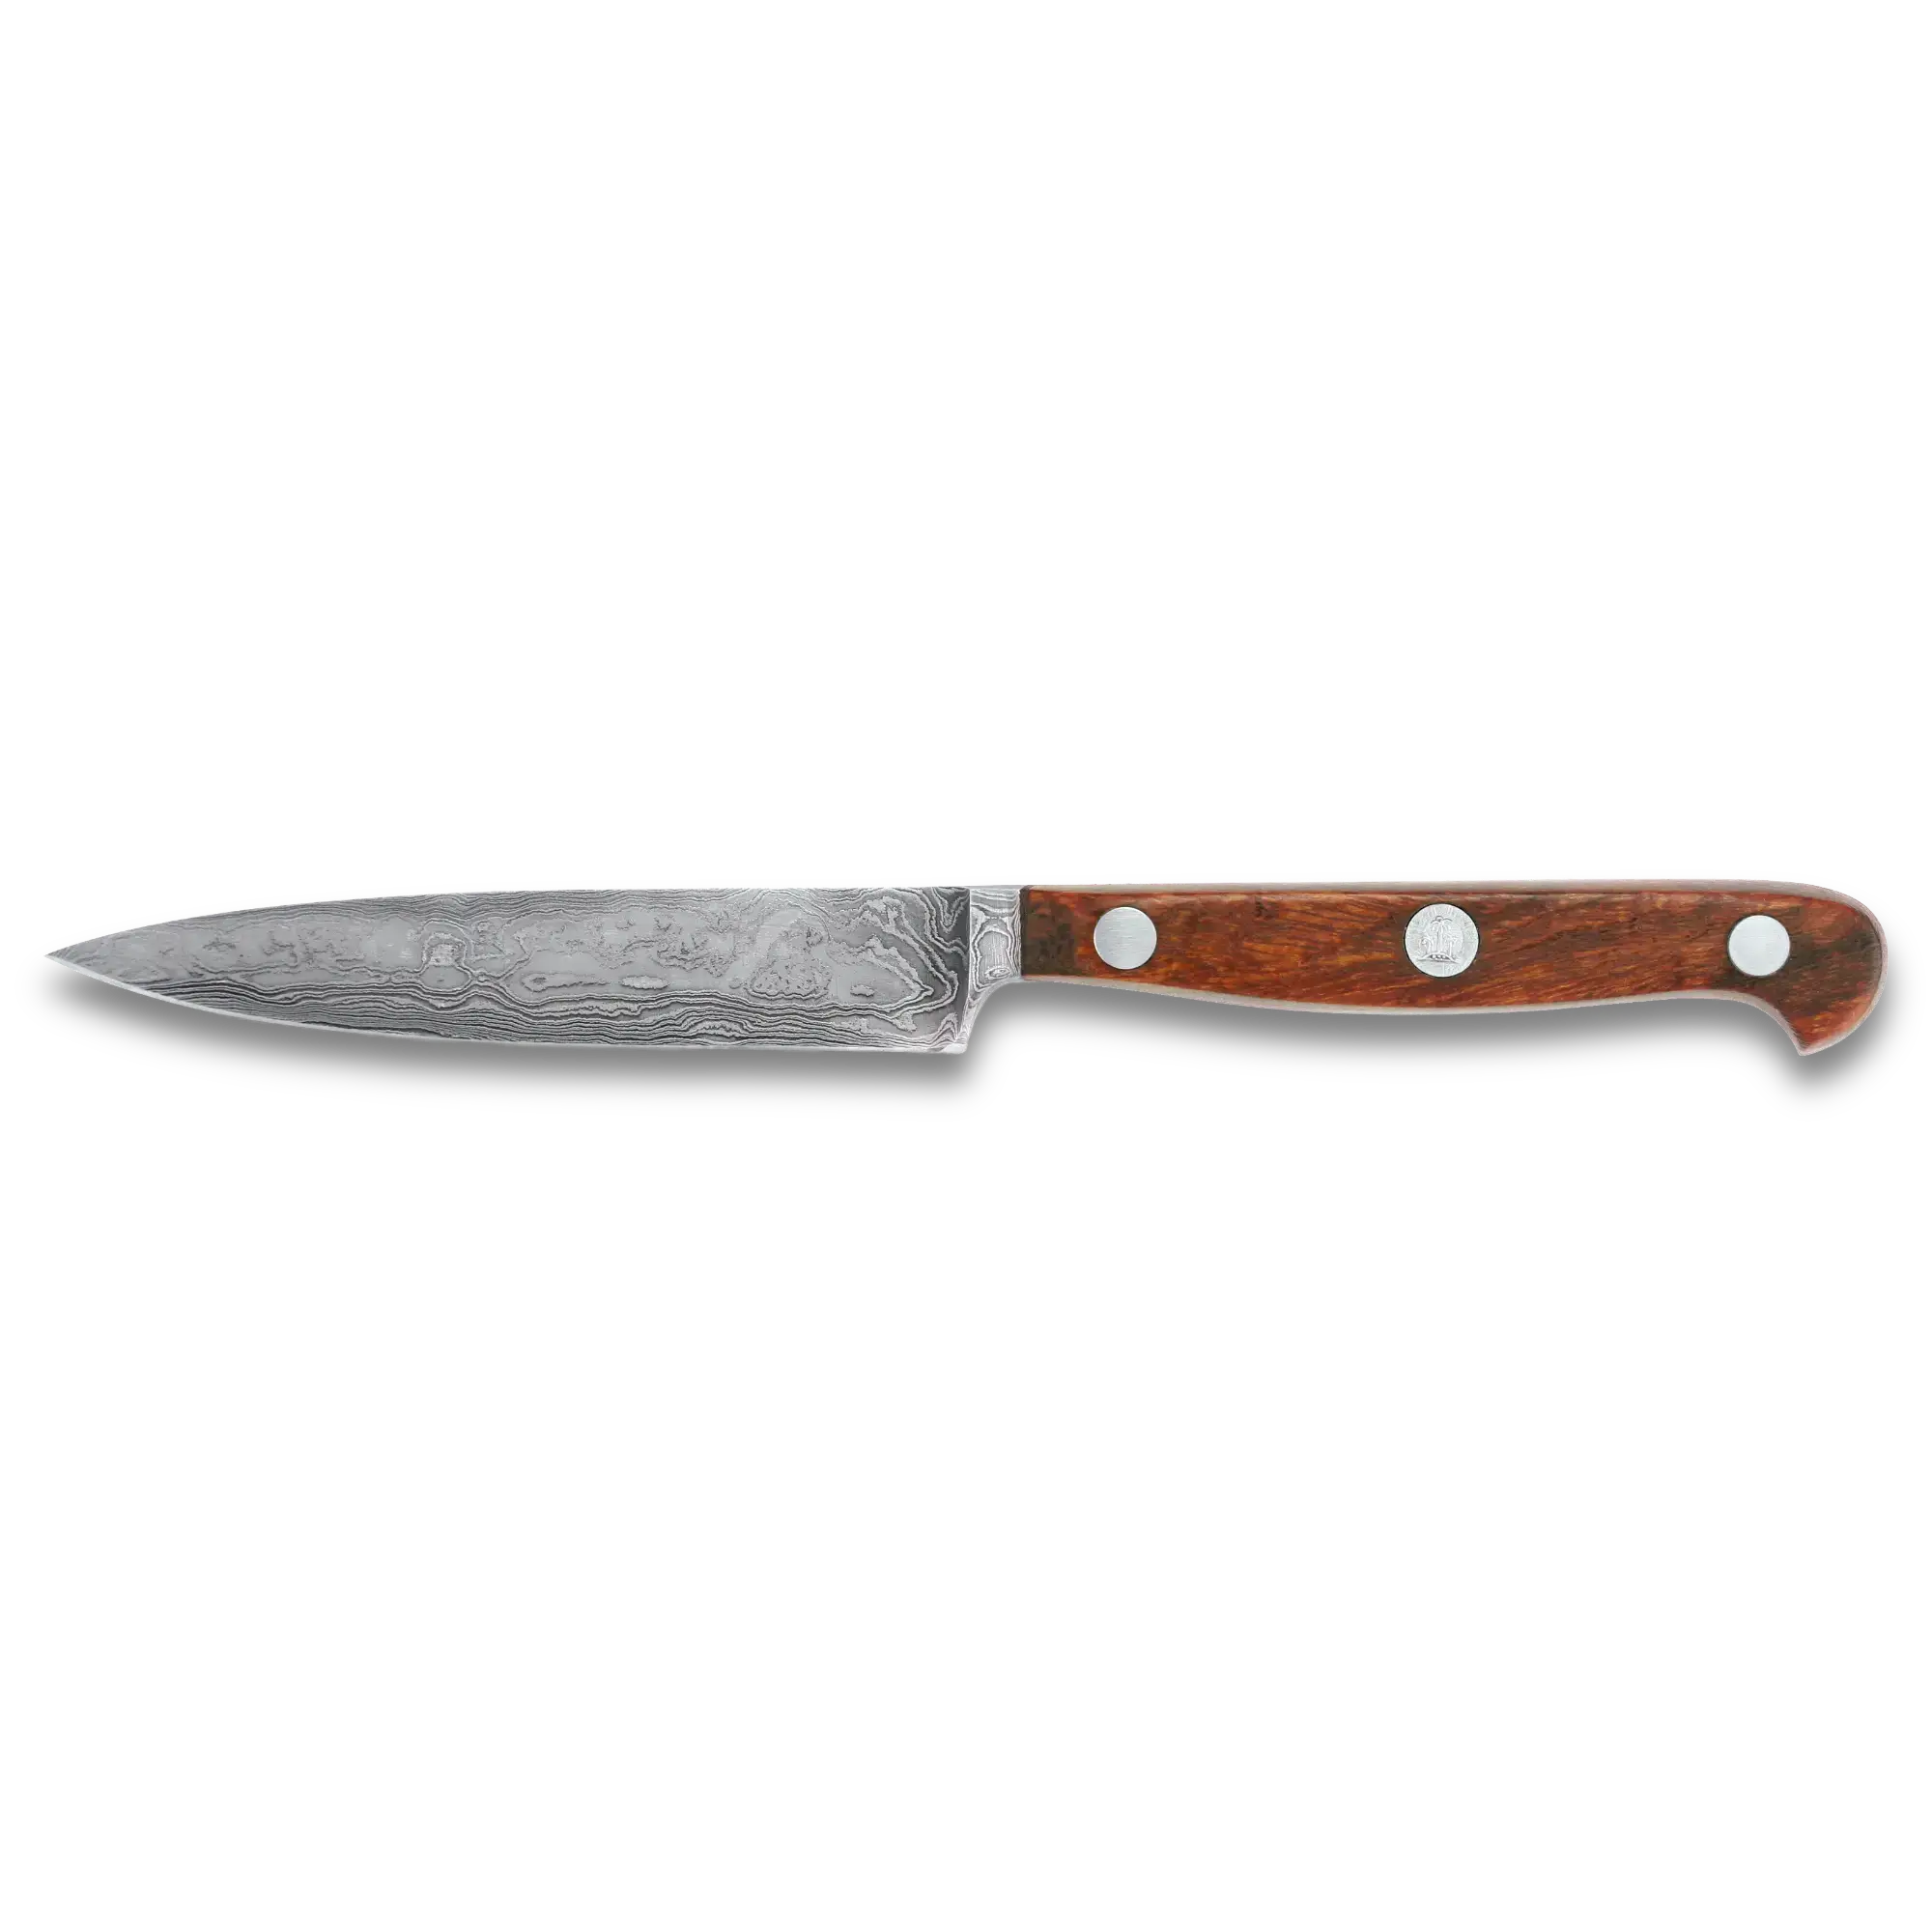 Larding Knife | Damascus Steel The Knife 10cm Blade